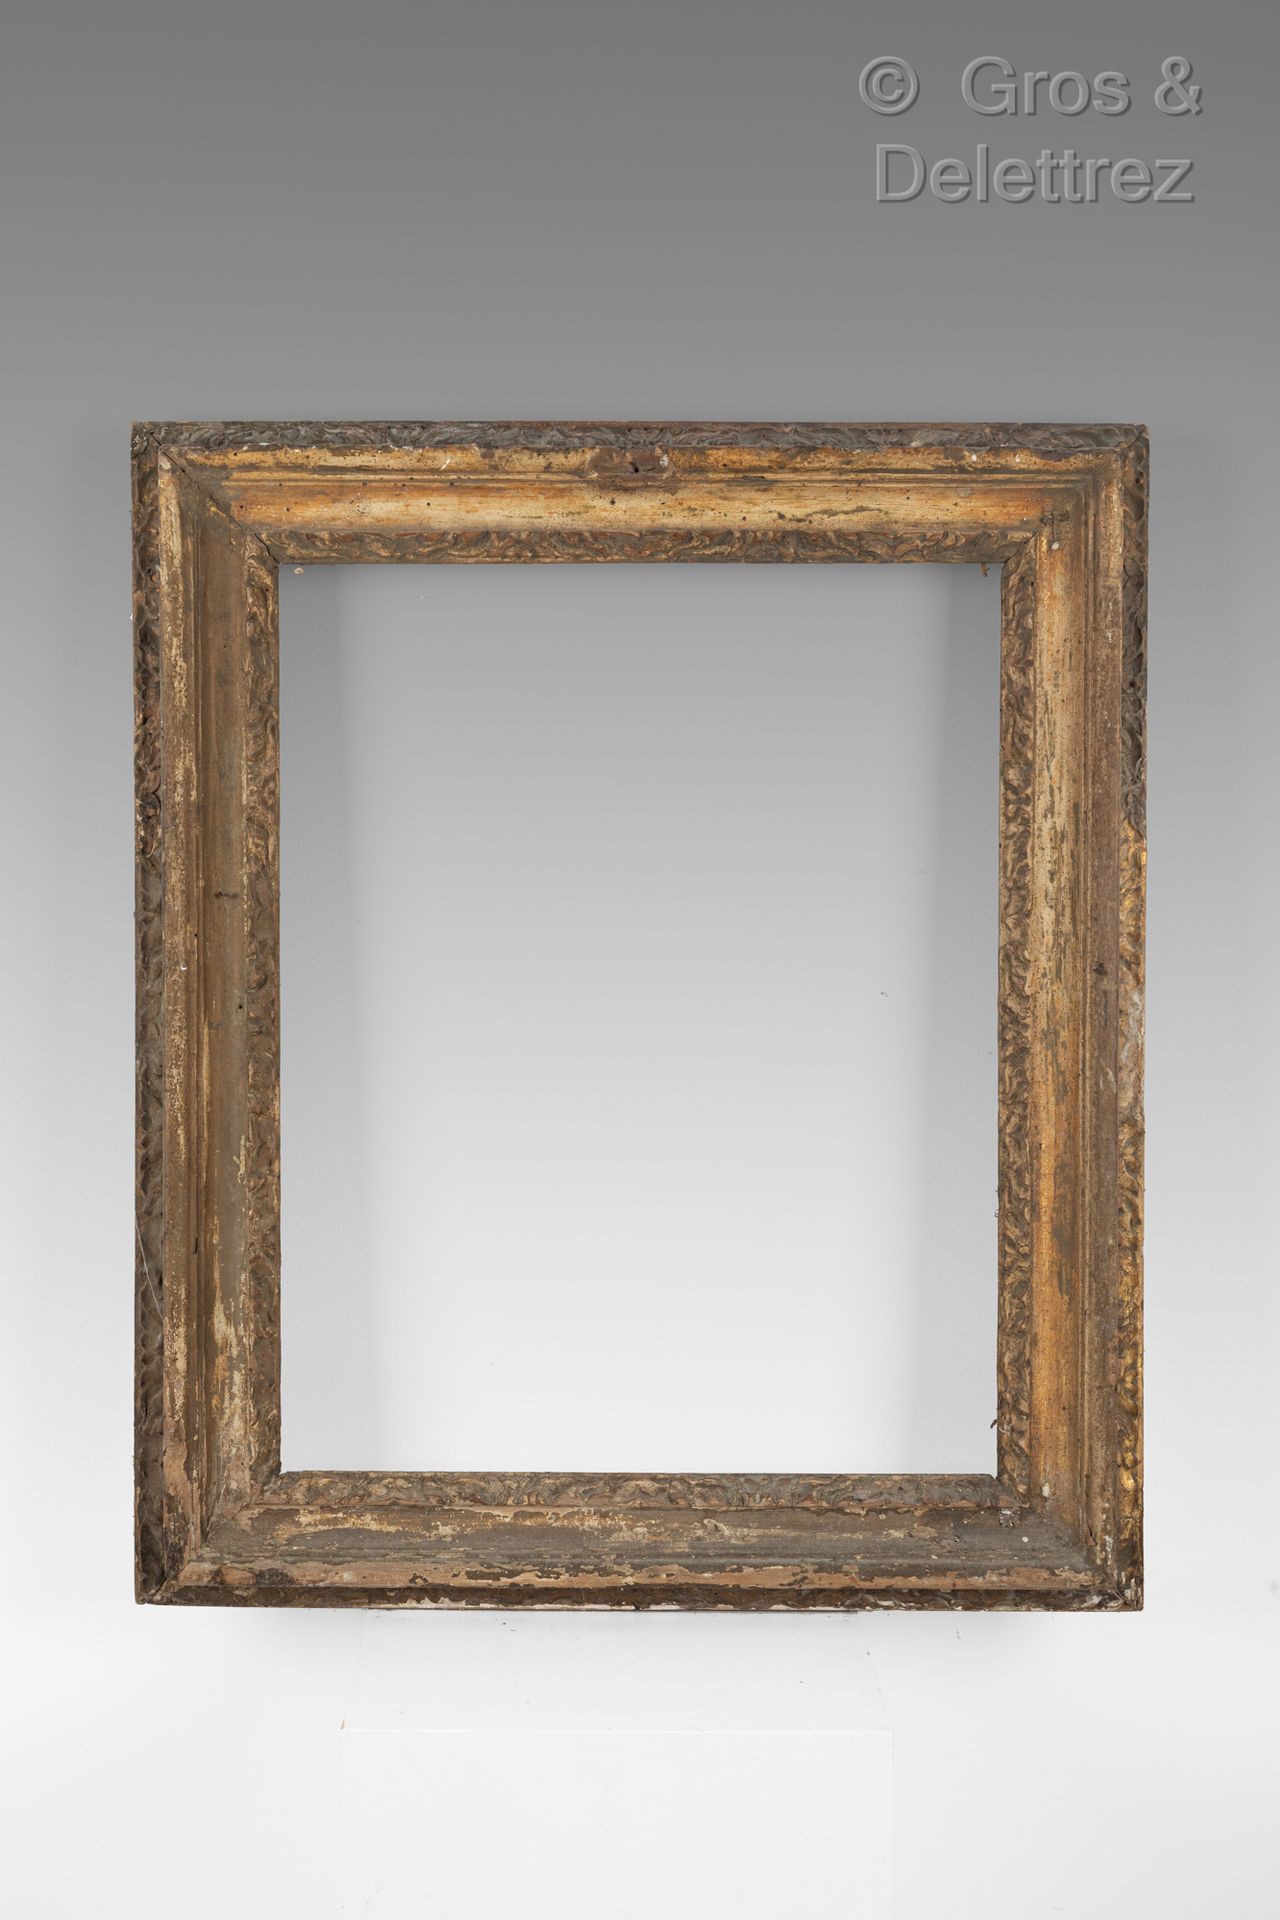 CARLO MARATTA 镀金木框

罗马 17世纪

43 x 55 x 8,8 cm。磨损和撕裂。10F